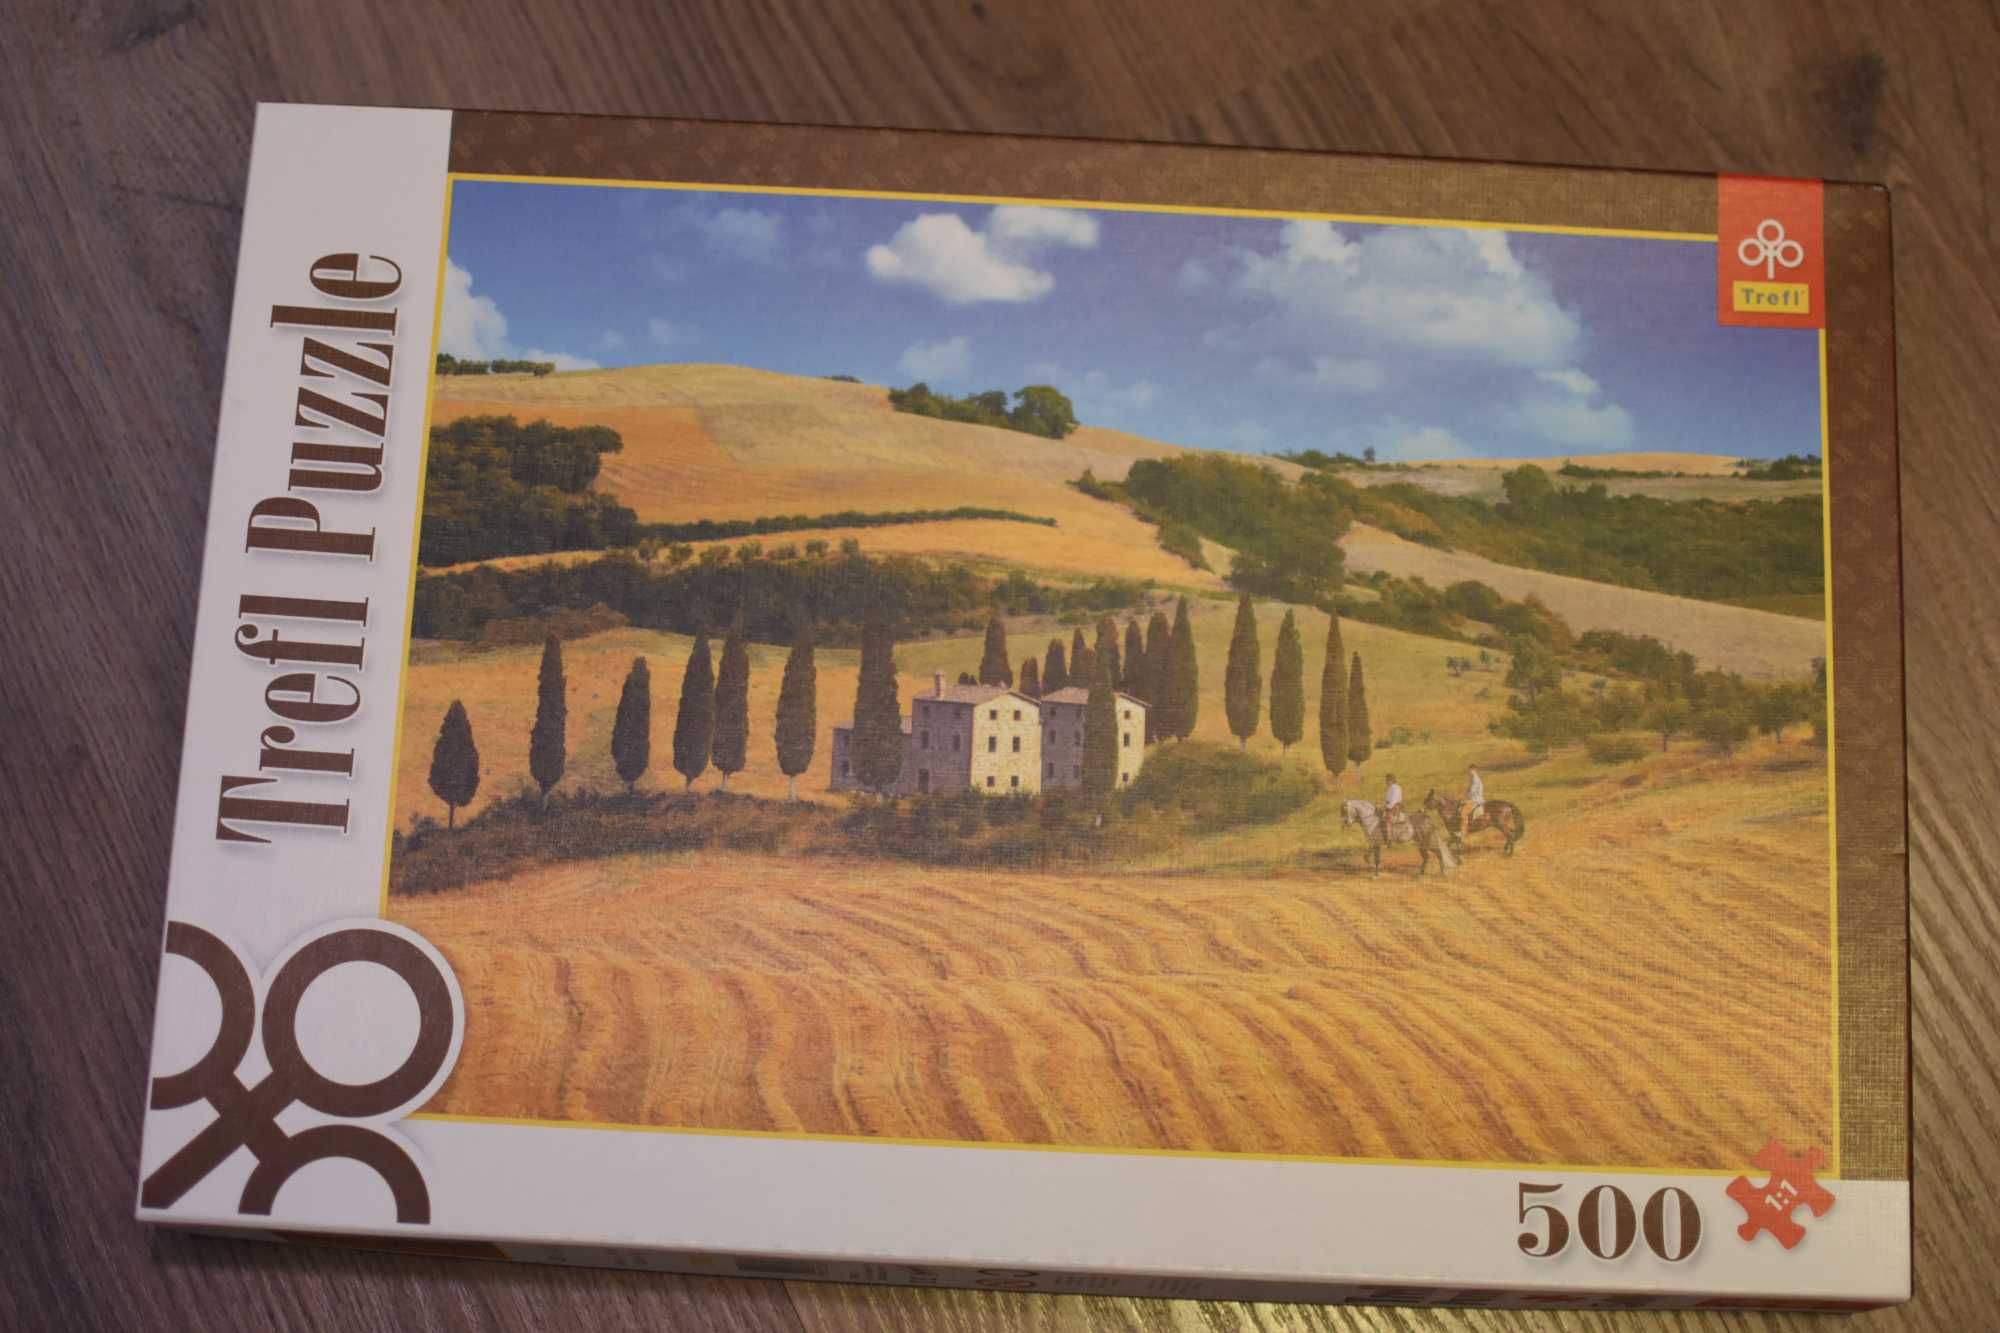 Trefl 500 Puzzle Toskania, Wtochy Tuscany, Italy 48x34cm